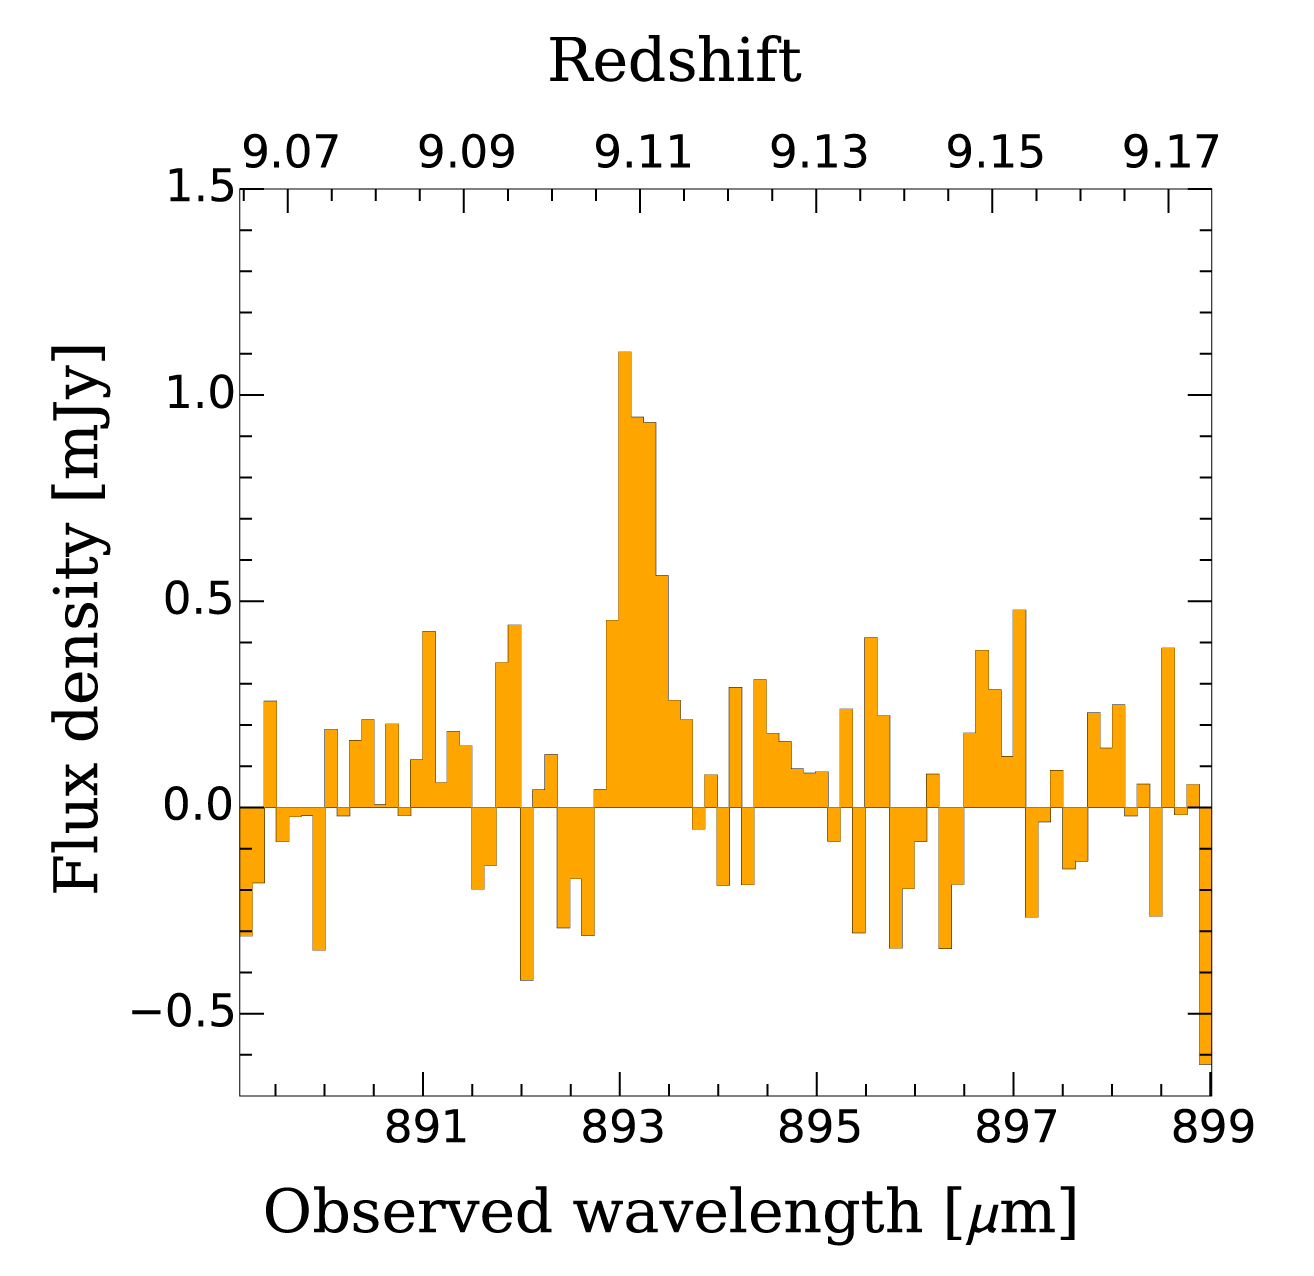 <p>Espectro de microondas de iones de oxígeno en MACS1149-JD1 detectados por ALMA. Originalmente era luz infrarroja a una longitud de onda de 88 micrómetros, y ALMA la detectó como microondas con de 893 micrómetros de longitud debido al efecto de la expansión del Universo. Créditos:  Hashimoto et al. - ALMA (ESO/NAOJ/NRAO)</p>
